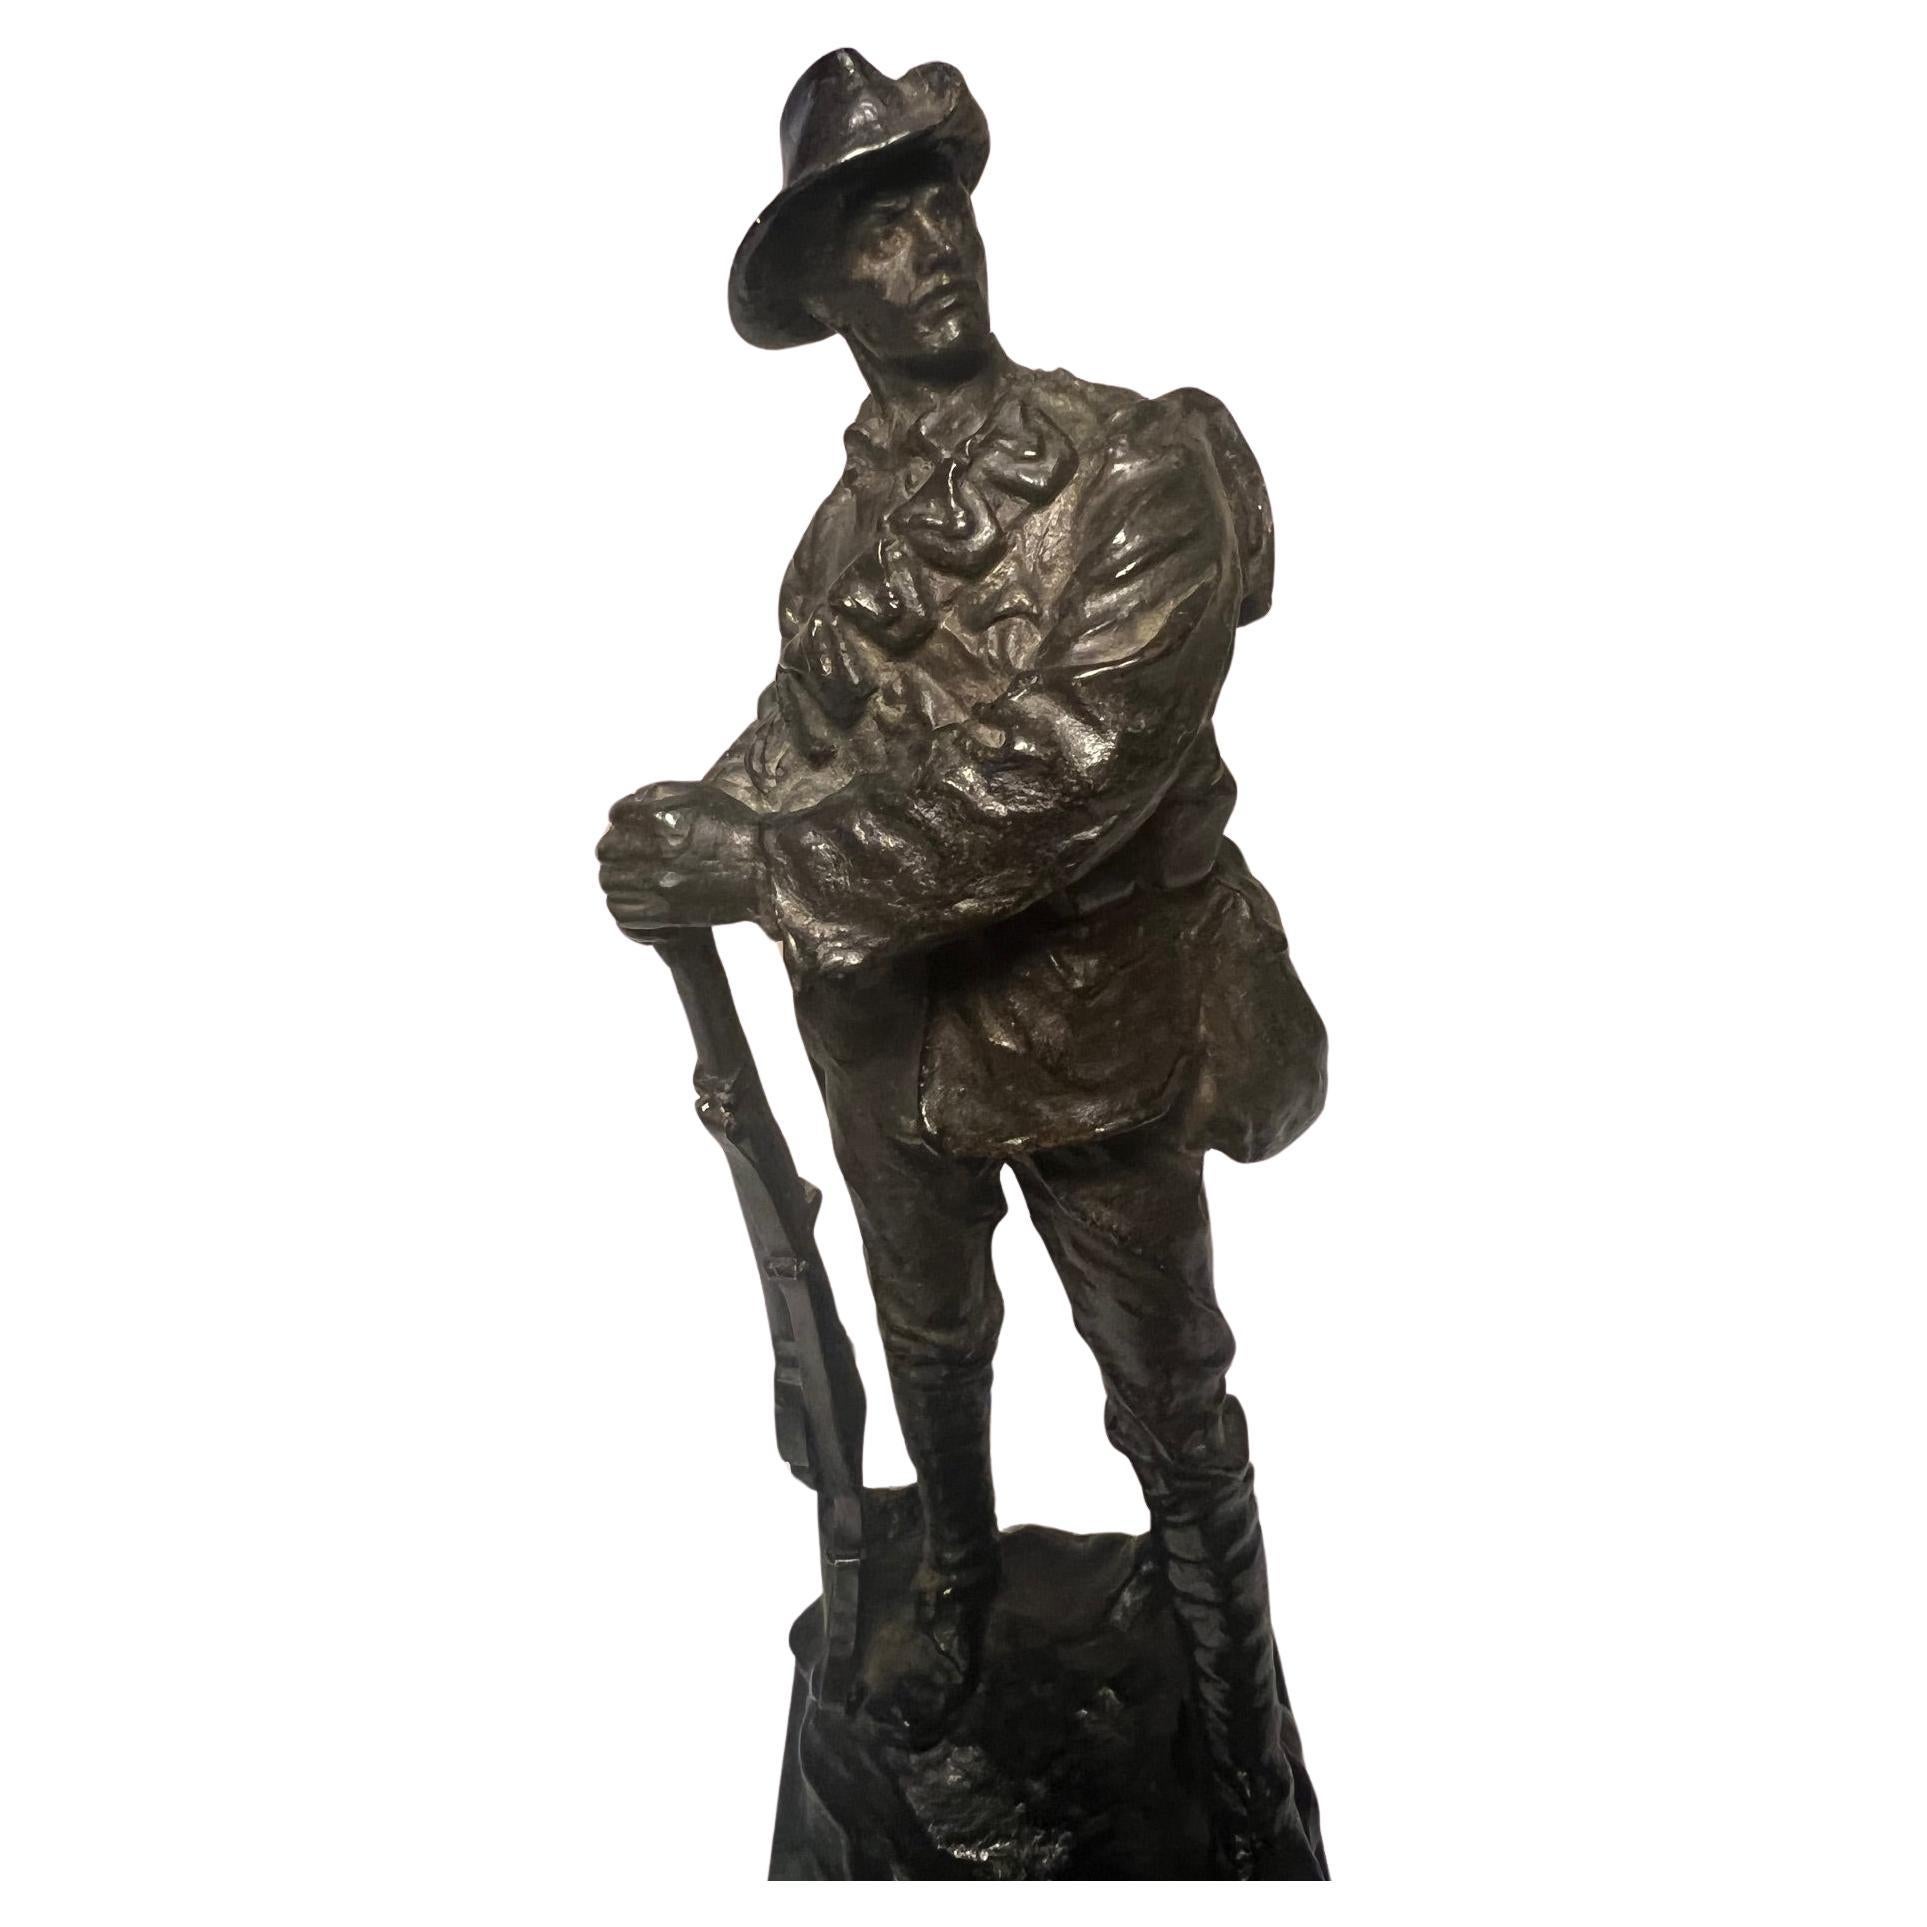 Beeindruckende Statue eines australischen Infanteristen, original patiniert und gut modelliert.

Von dem bekannten englischen Bildhauer Leonard Stanford Merrifield. (1880-1943).